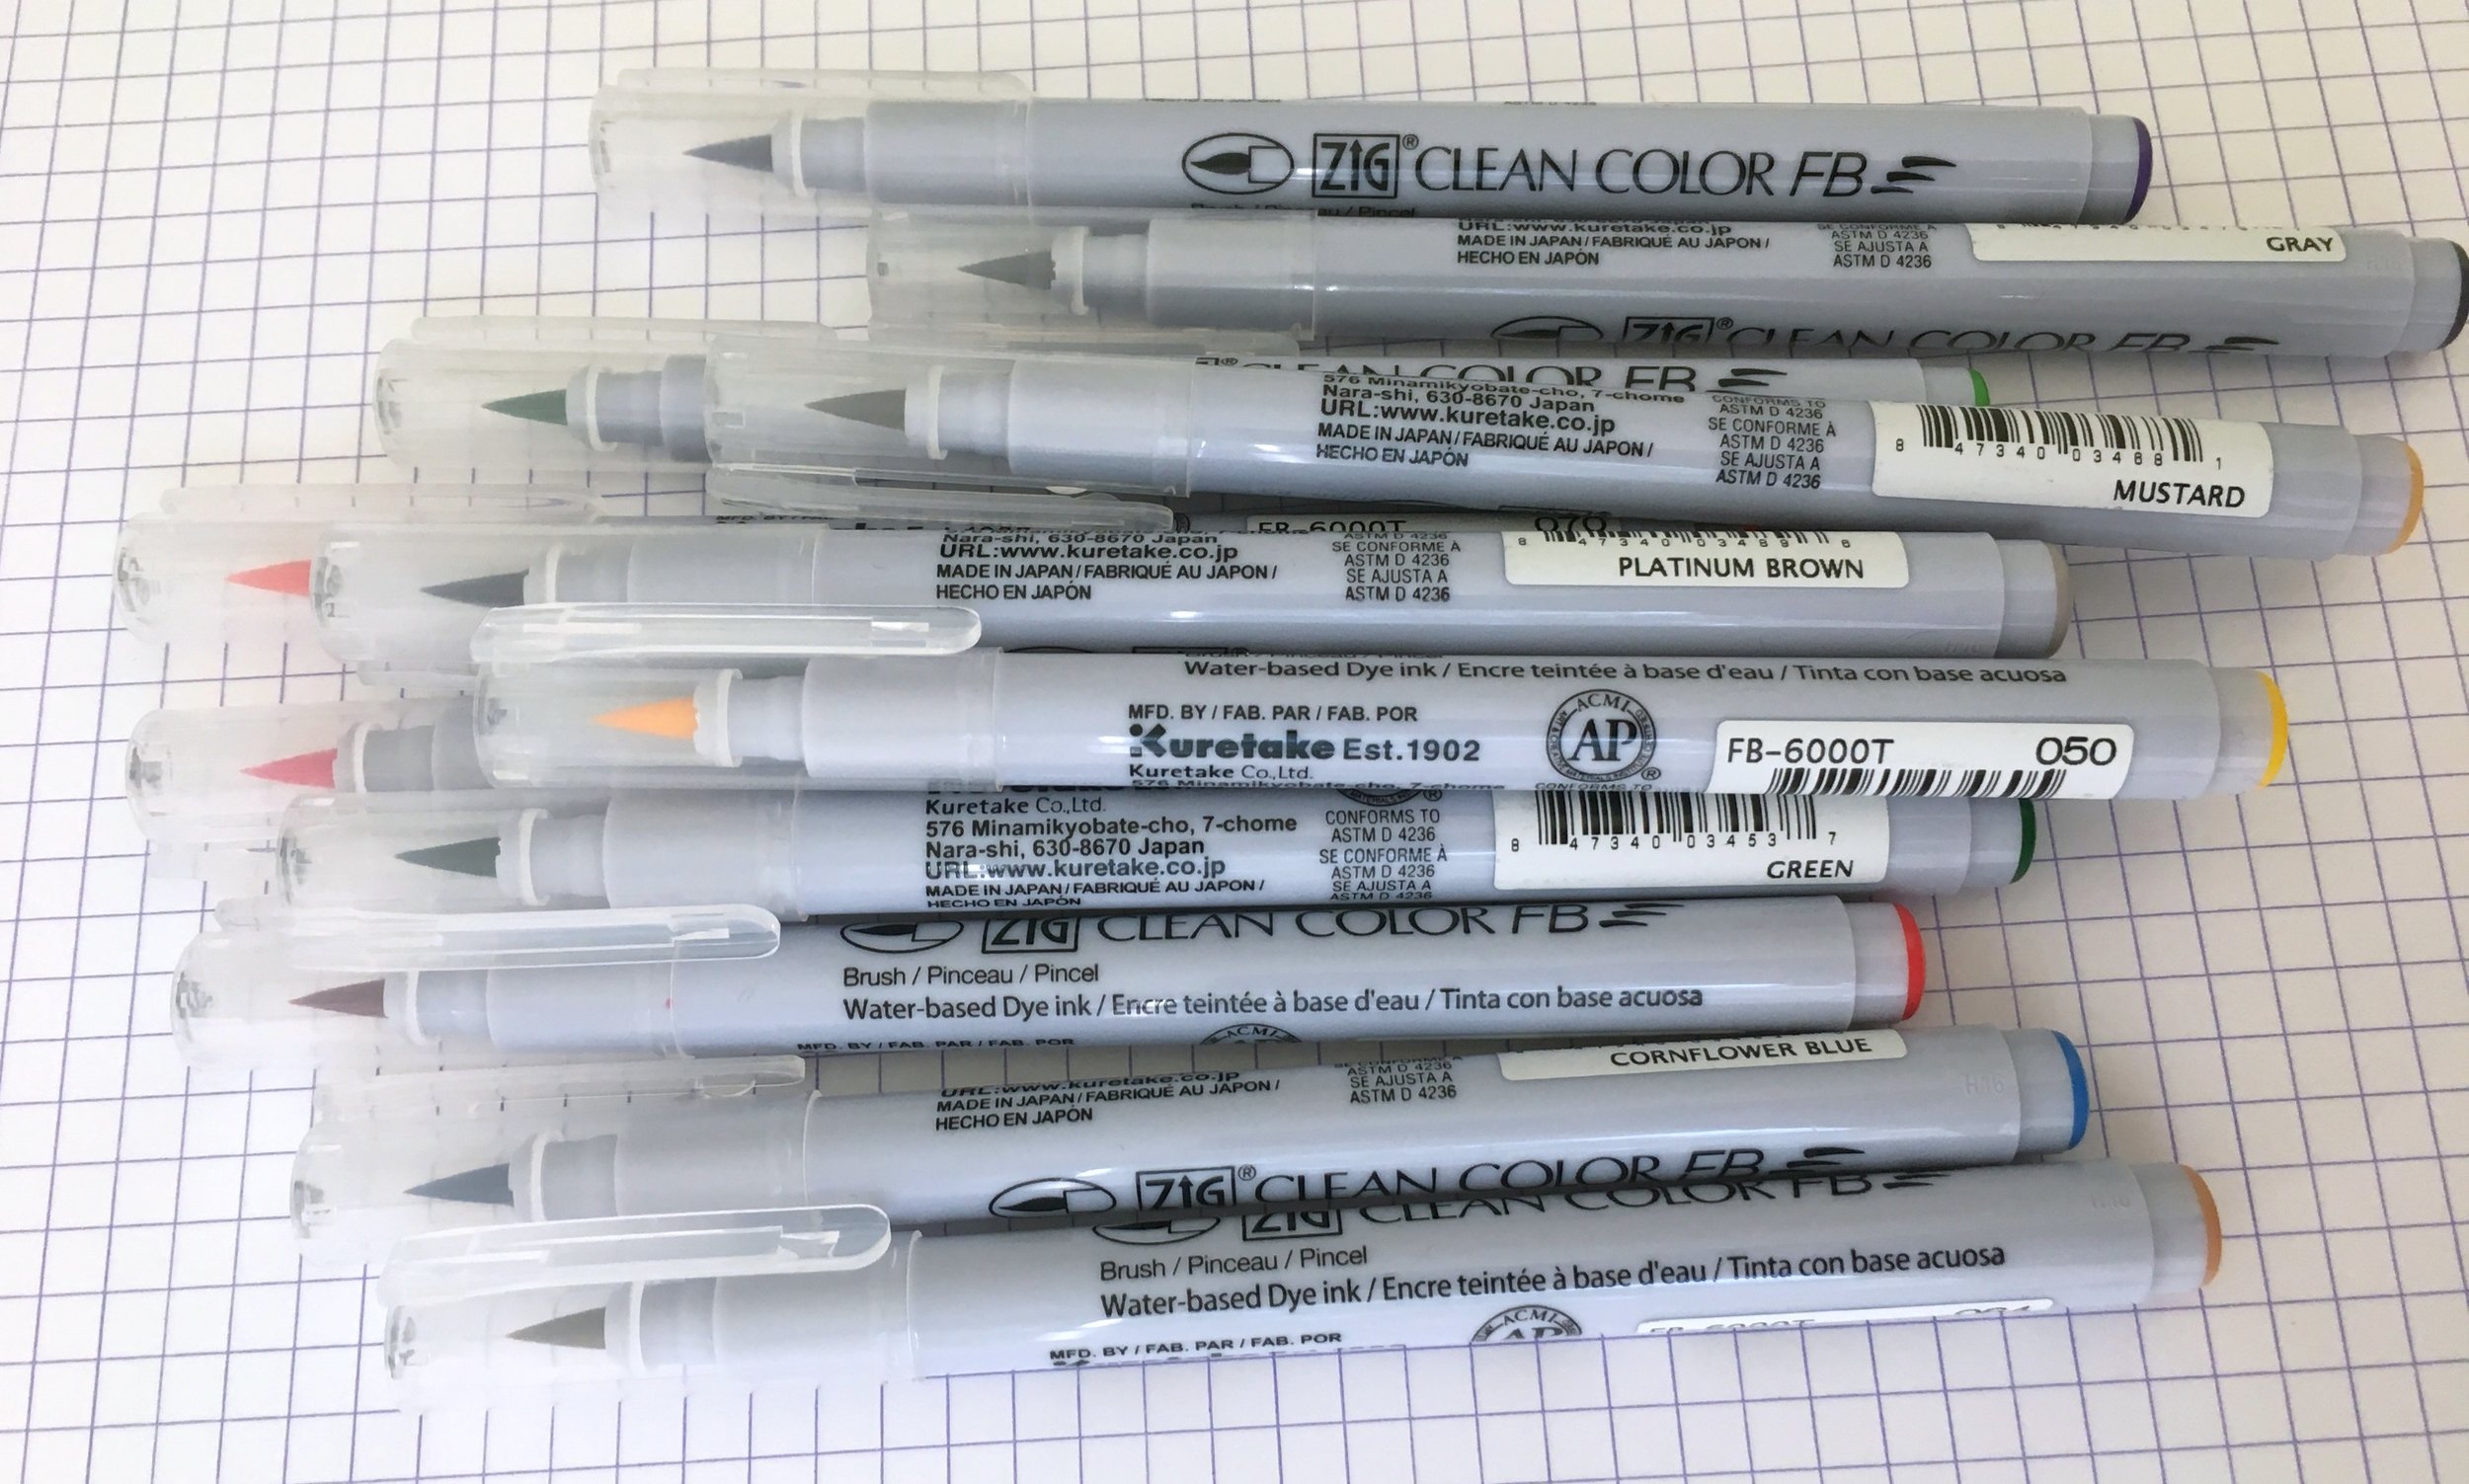 schuld Stereotype Versnipperd Kuretake ZIG Clean Color FB Brush Pen Review — The Pen Addict